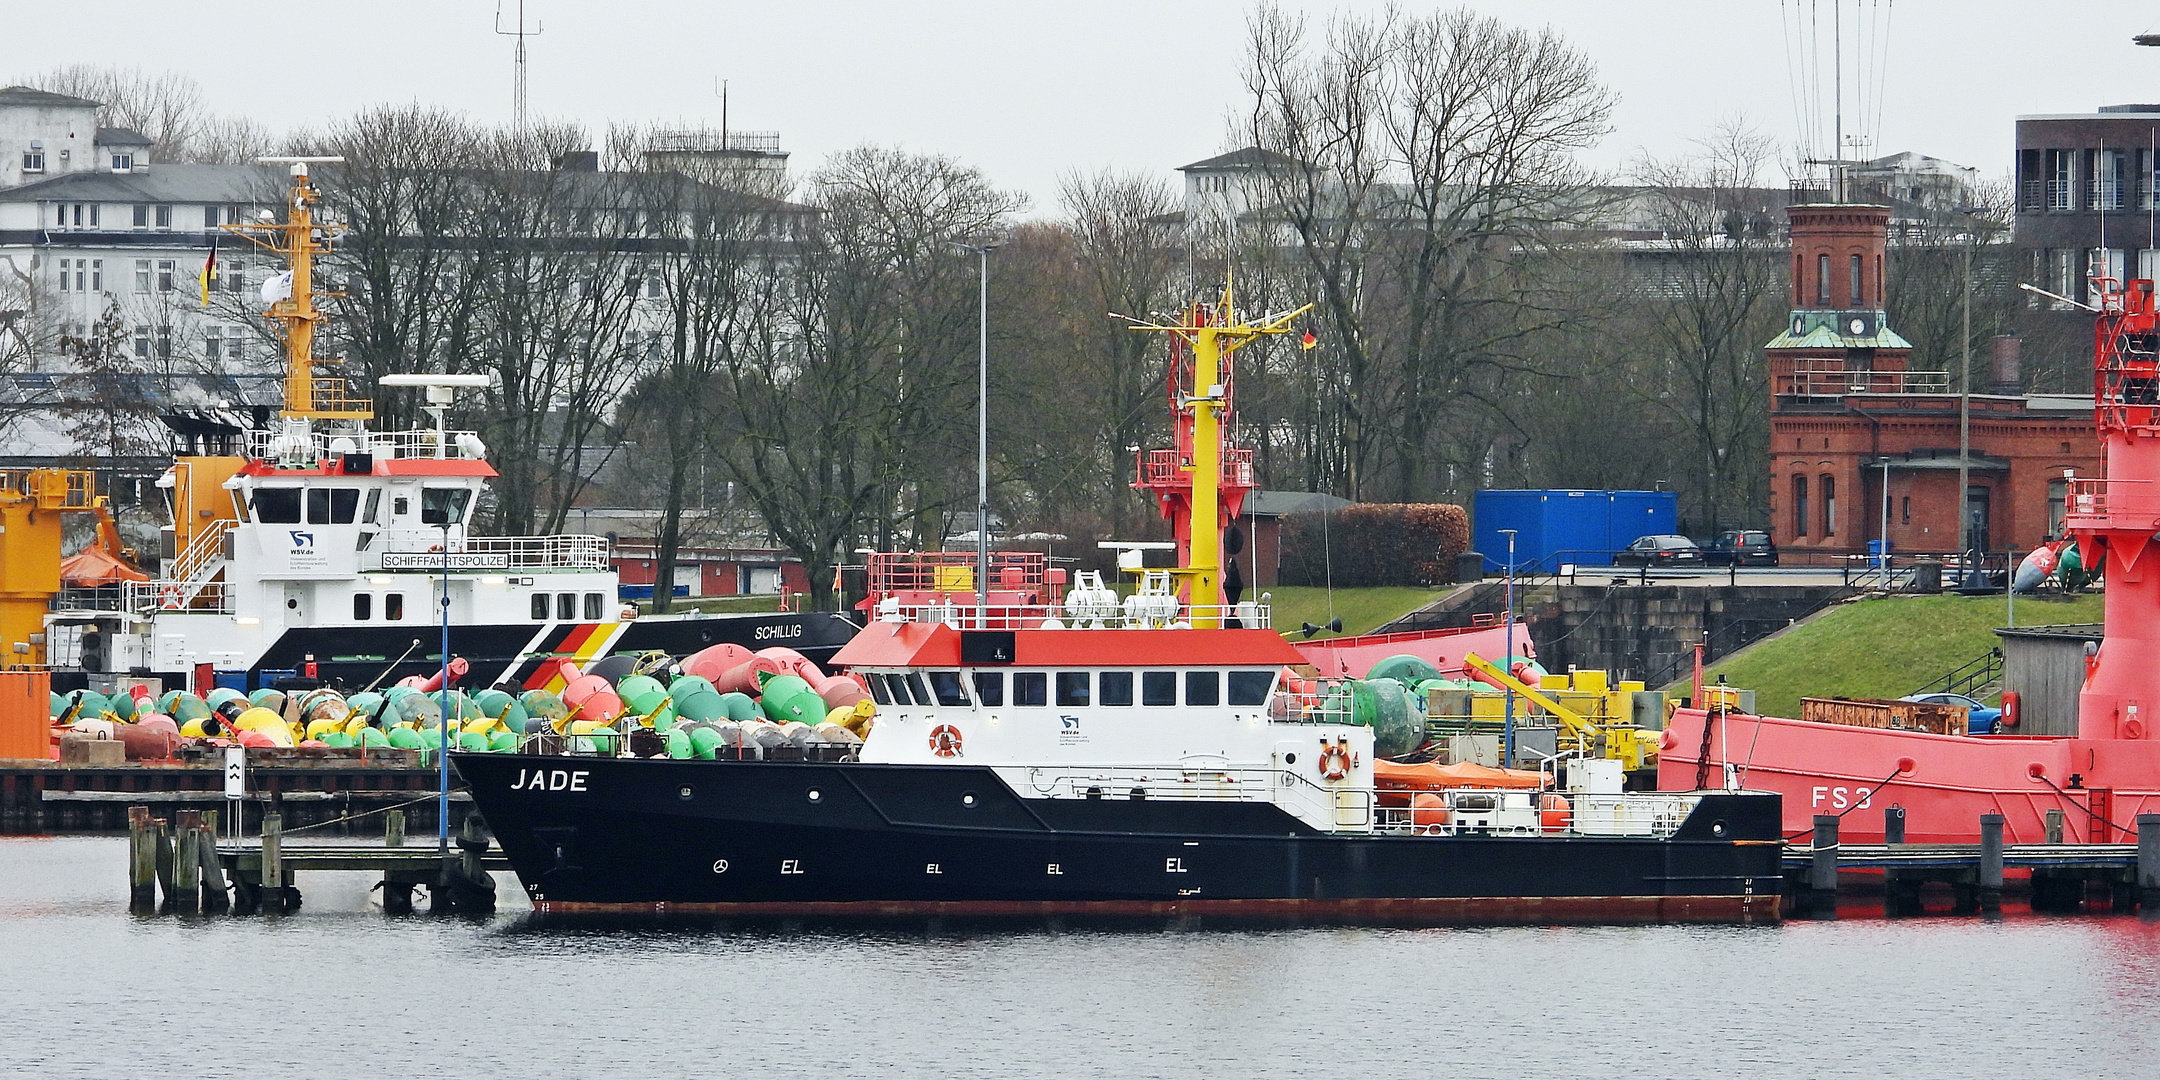 Forschungsschiff JADE im Hafen von Wilhelmshaven